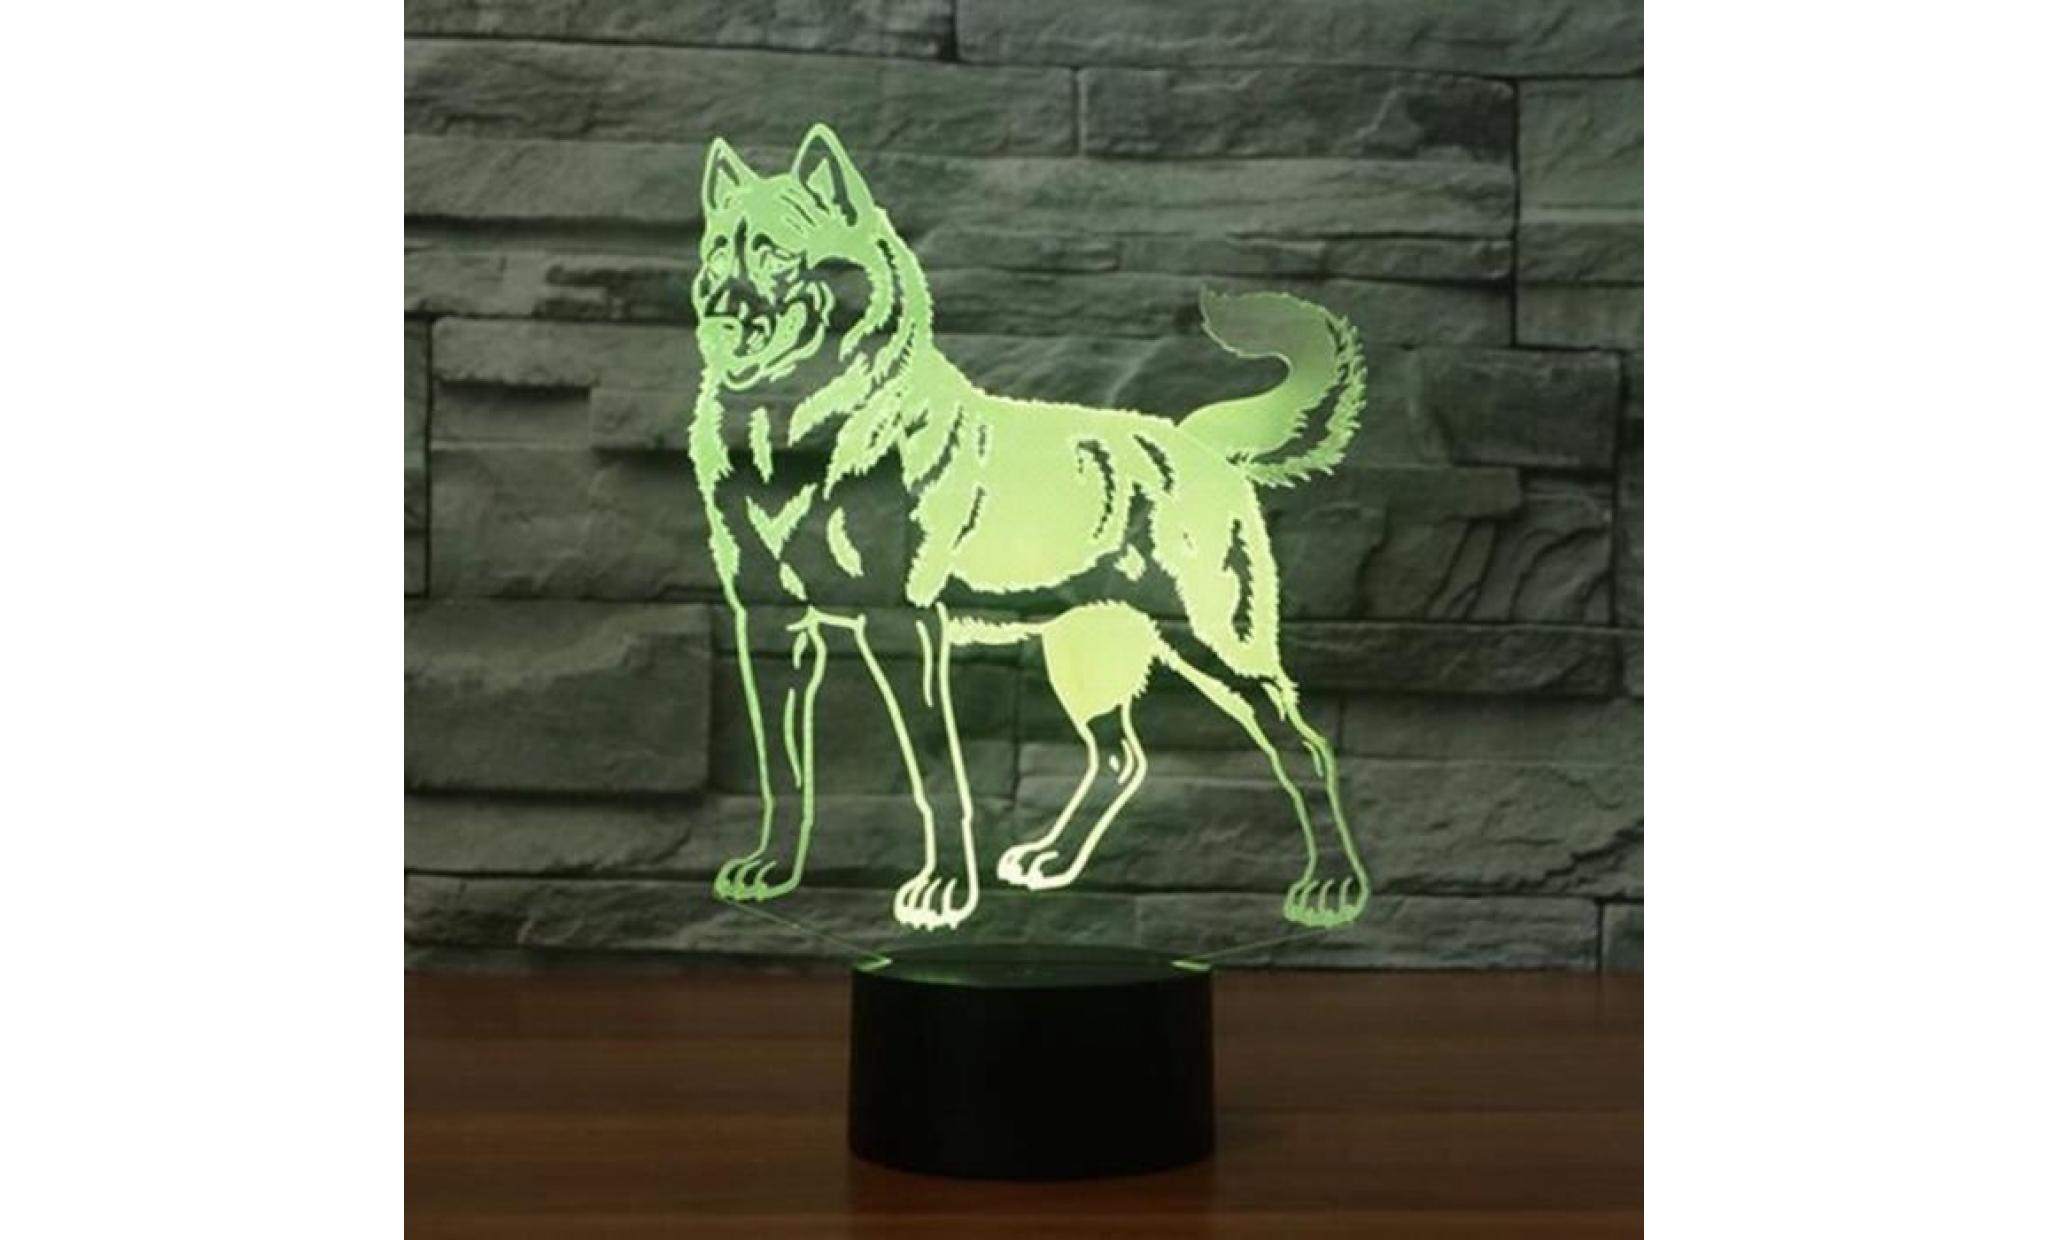 doberman pinscher 3d night light led tactile belle chien lampe de table animal 3d lampe 7 changement de couleur usb intérieur lampe pas cher